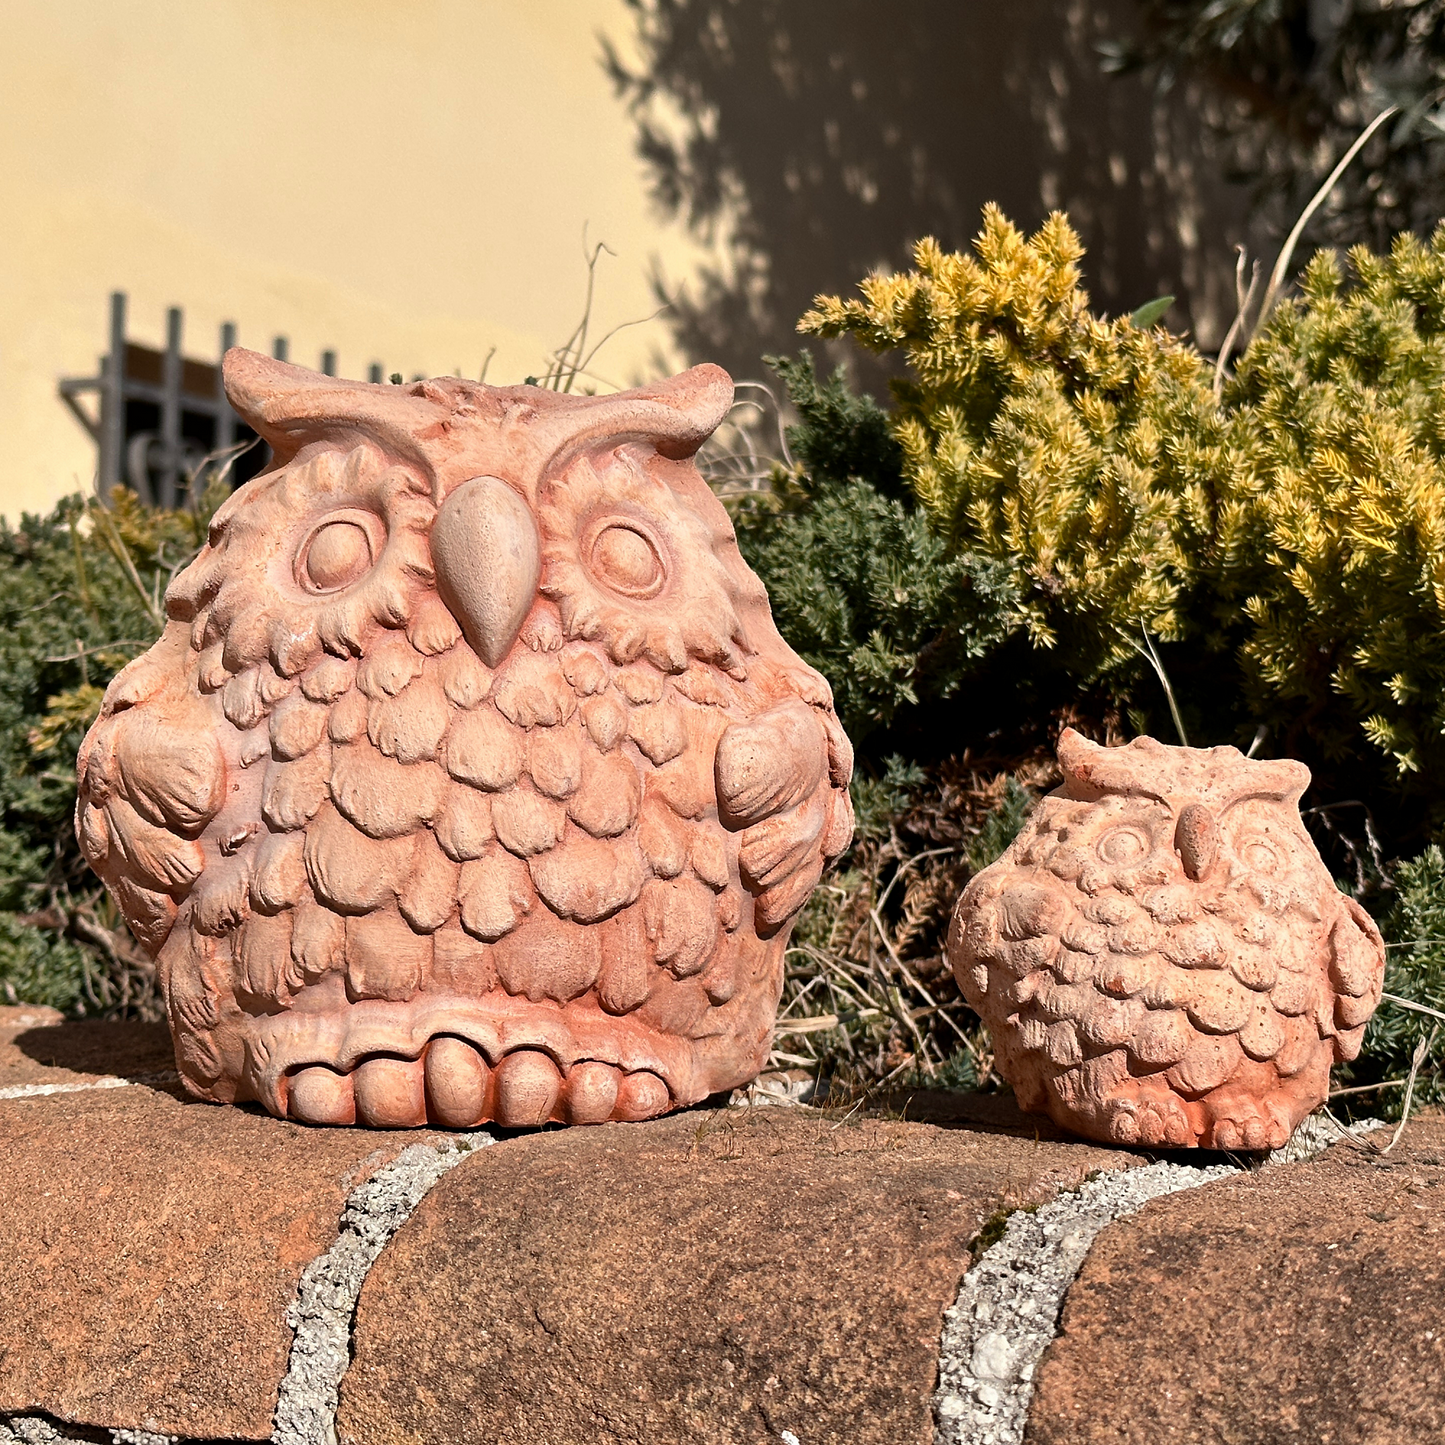 Gufo in terracotta artigianale per arredo giardino decorazione unica resistente alle intemperie (9 cm)